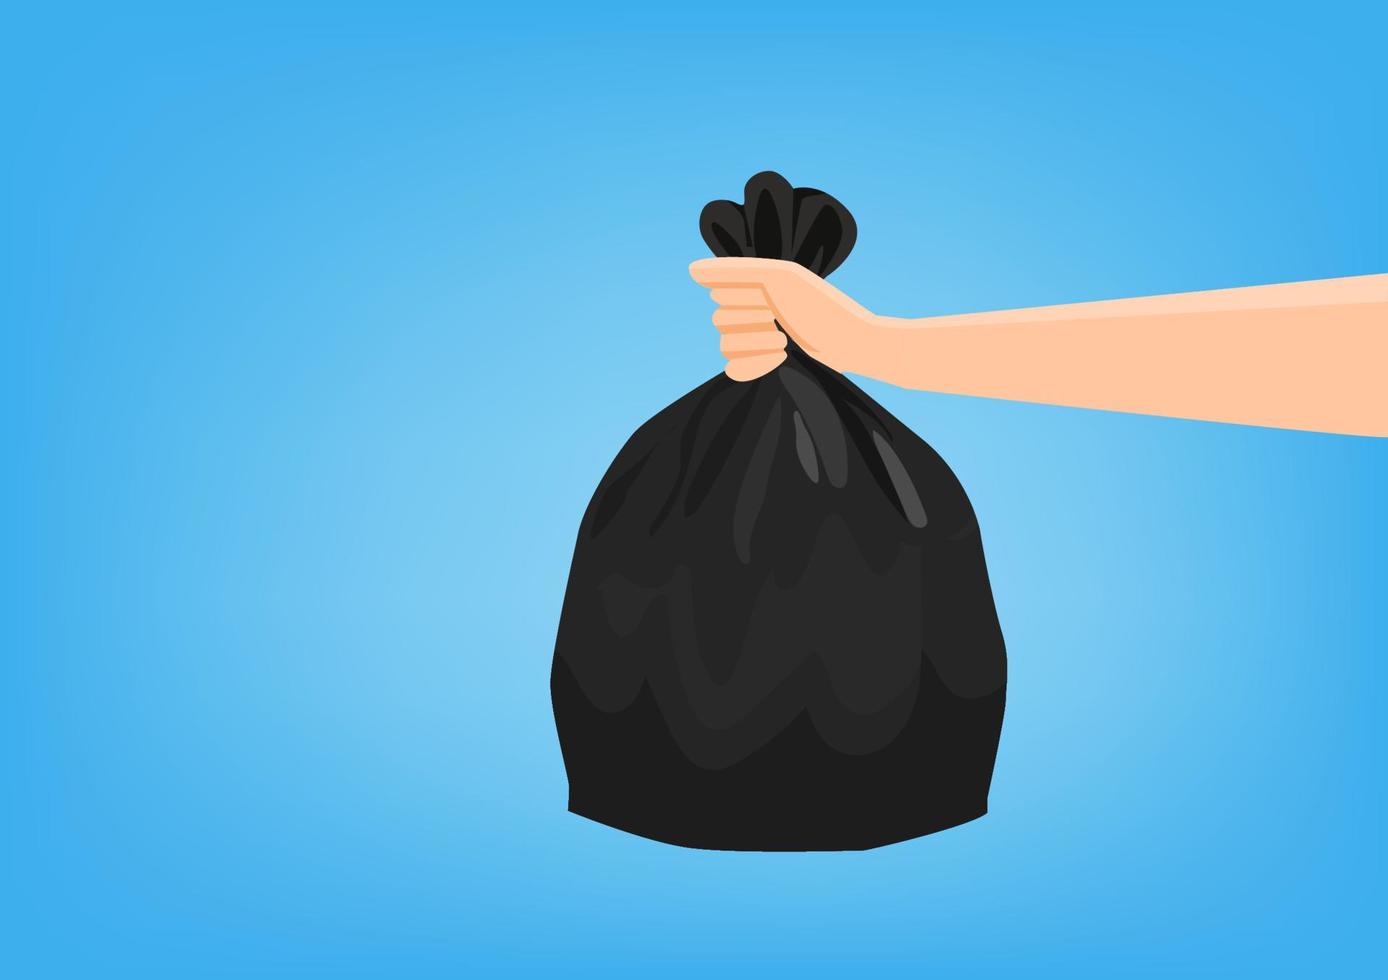 mão segurando um saco plástico preto para descartar o lixo. fundo azul, ilustração vetorial de ilustração de desenhos animados de estilo simples vetor